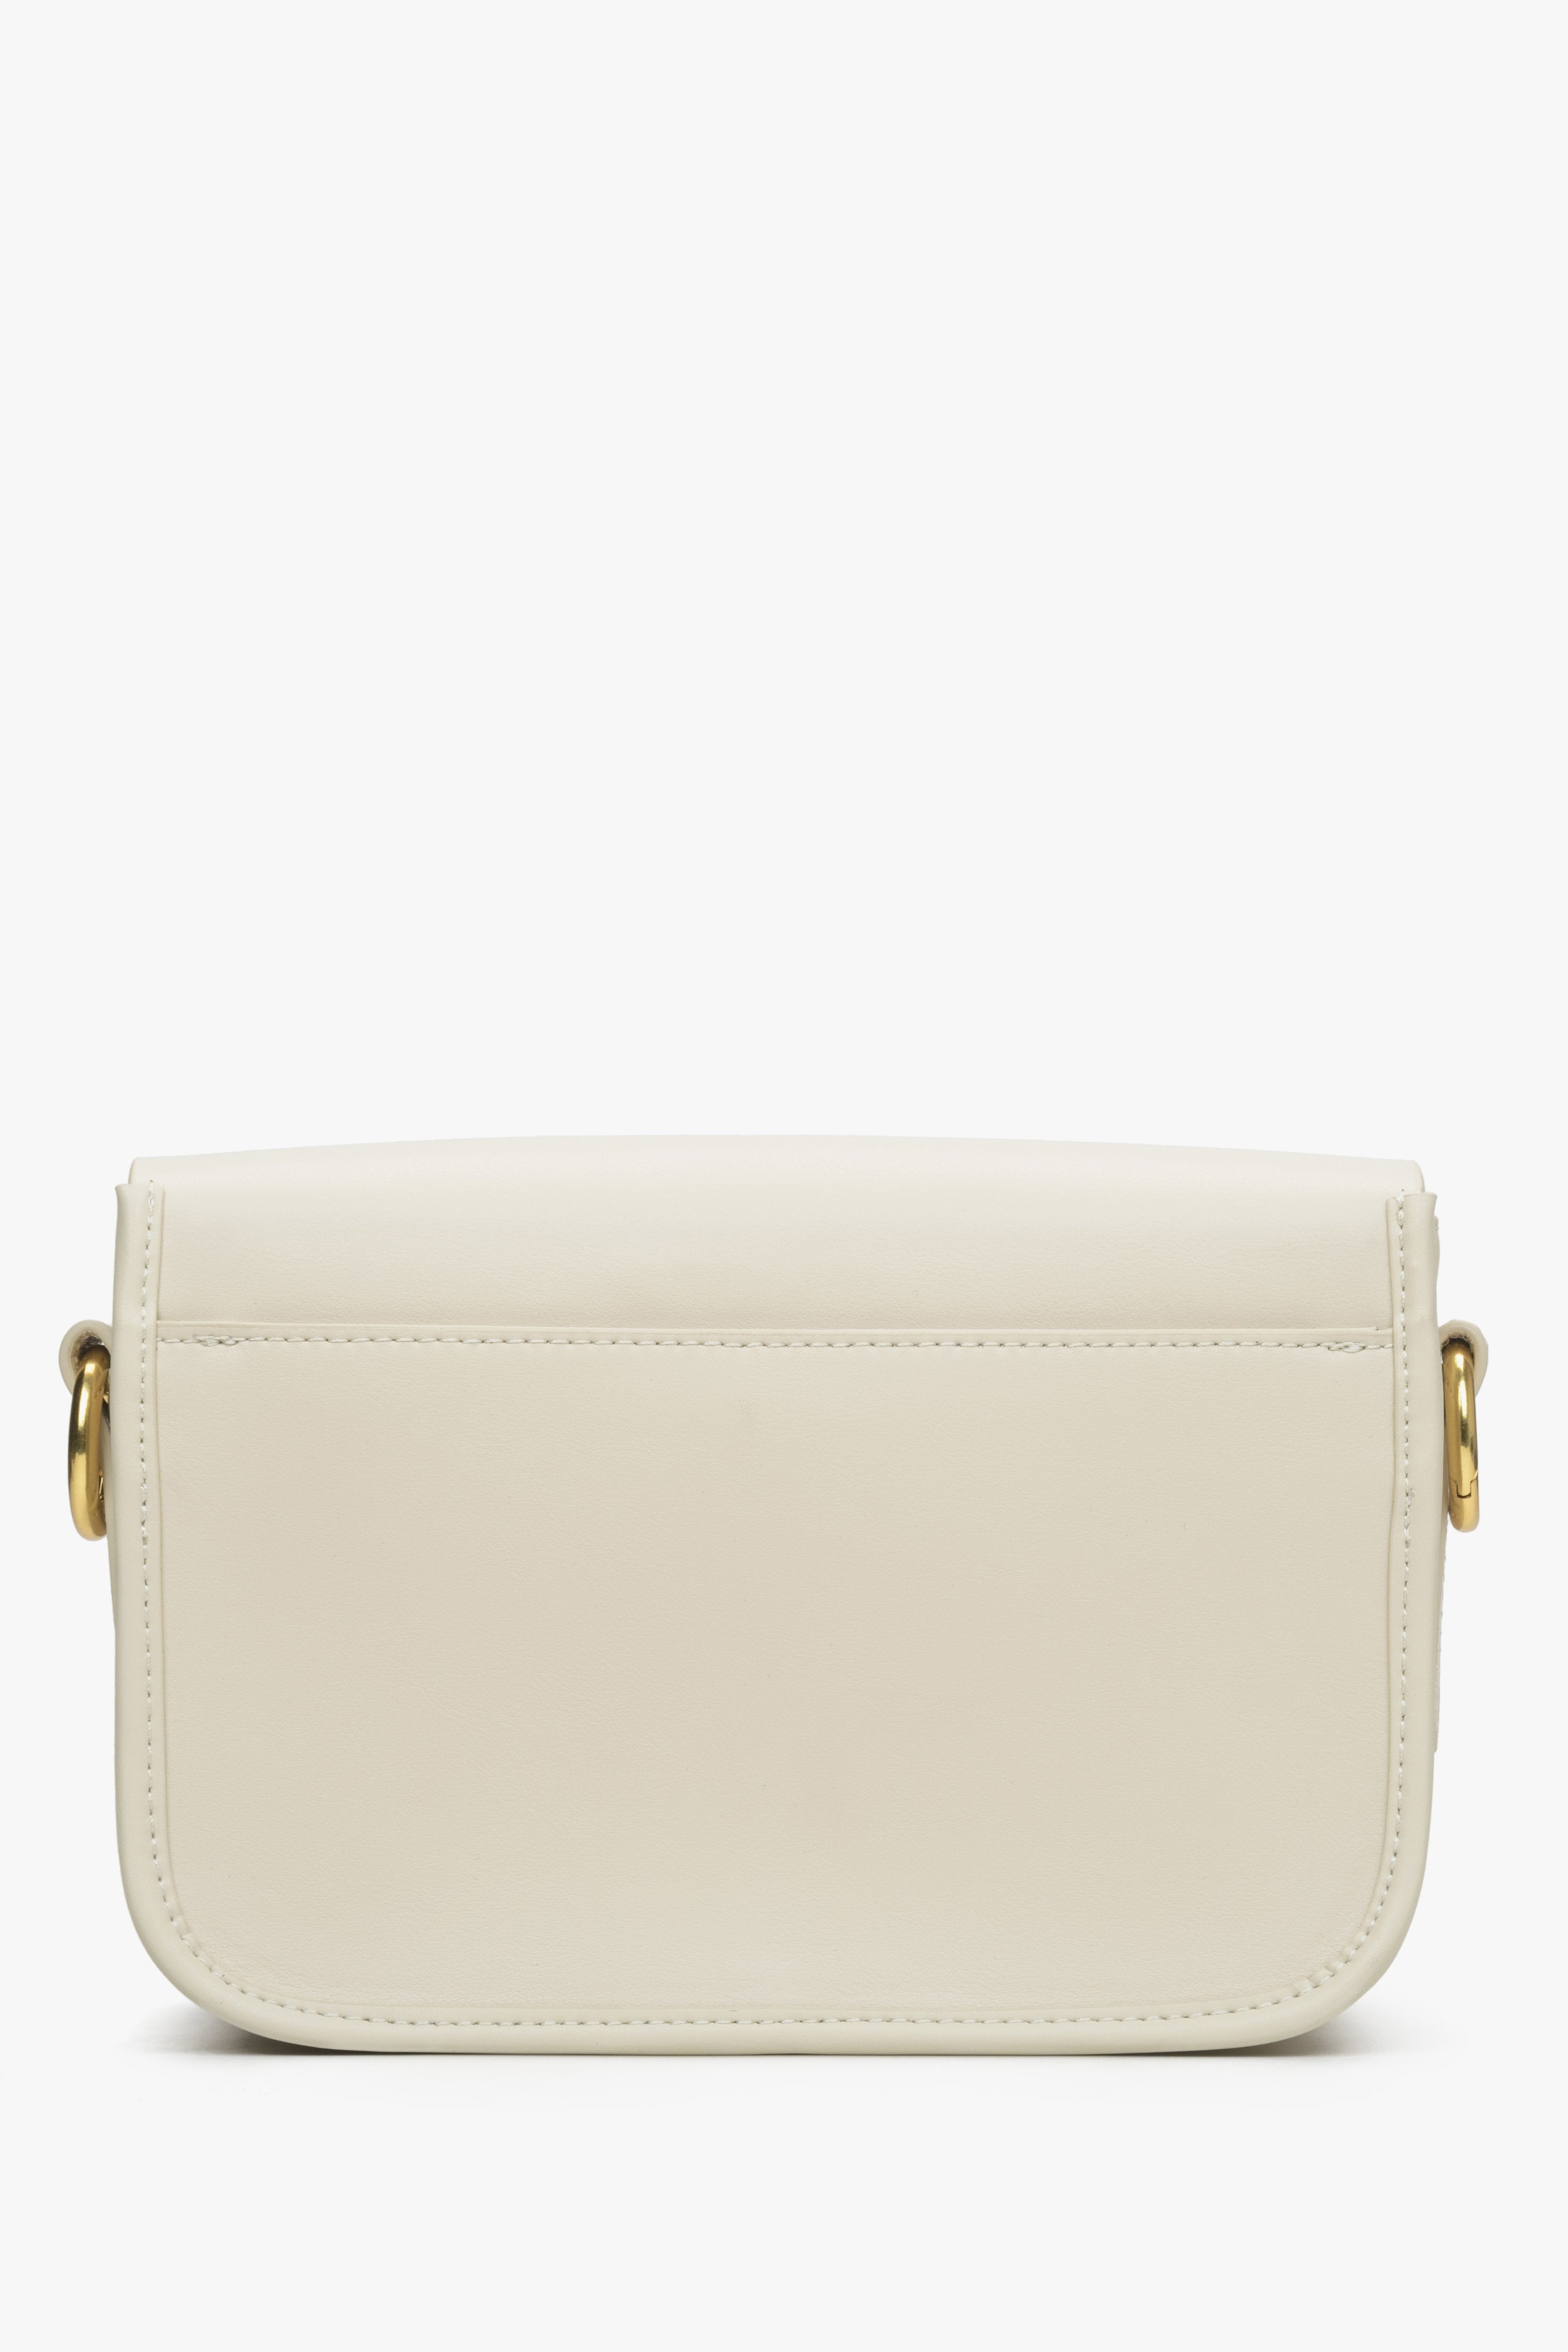 Women's light beige leather handbag by Estro - reverse side.